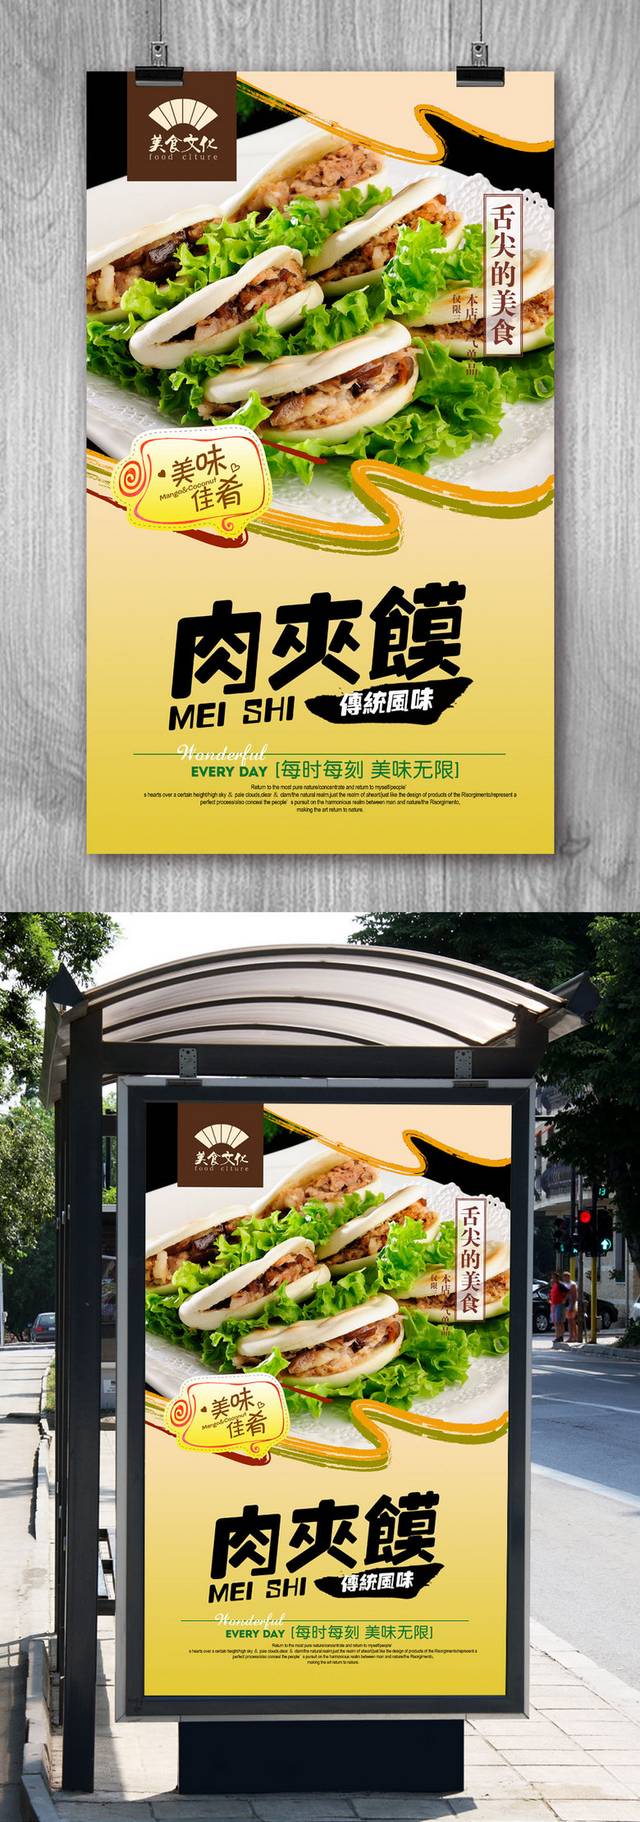 清新特色肉夹馍宣传海报设计